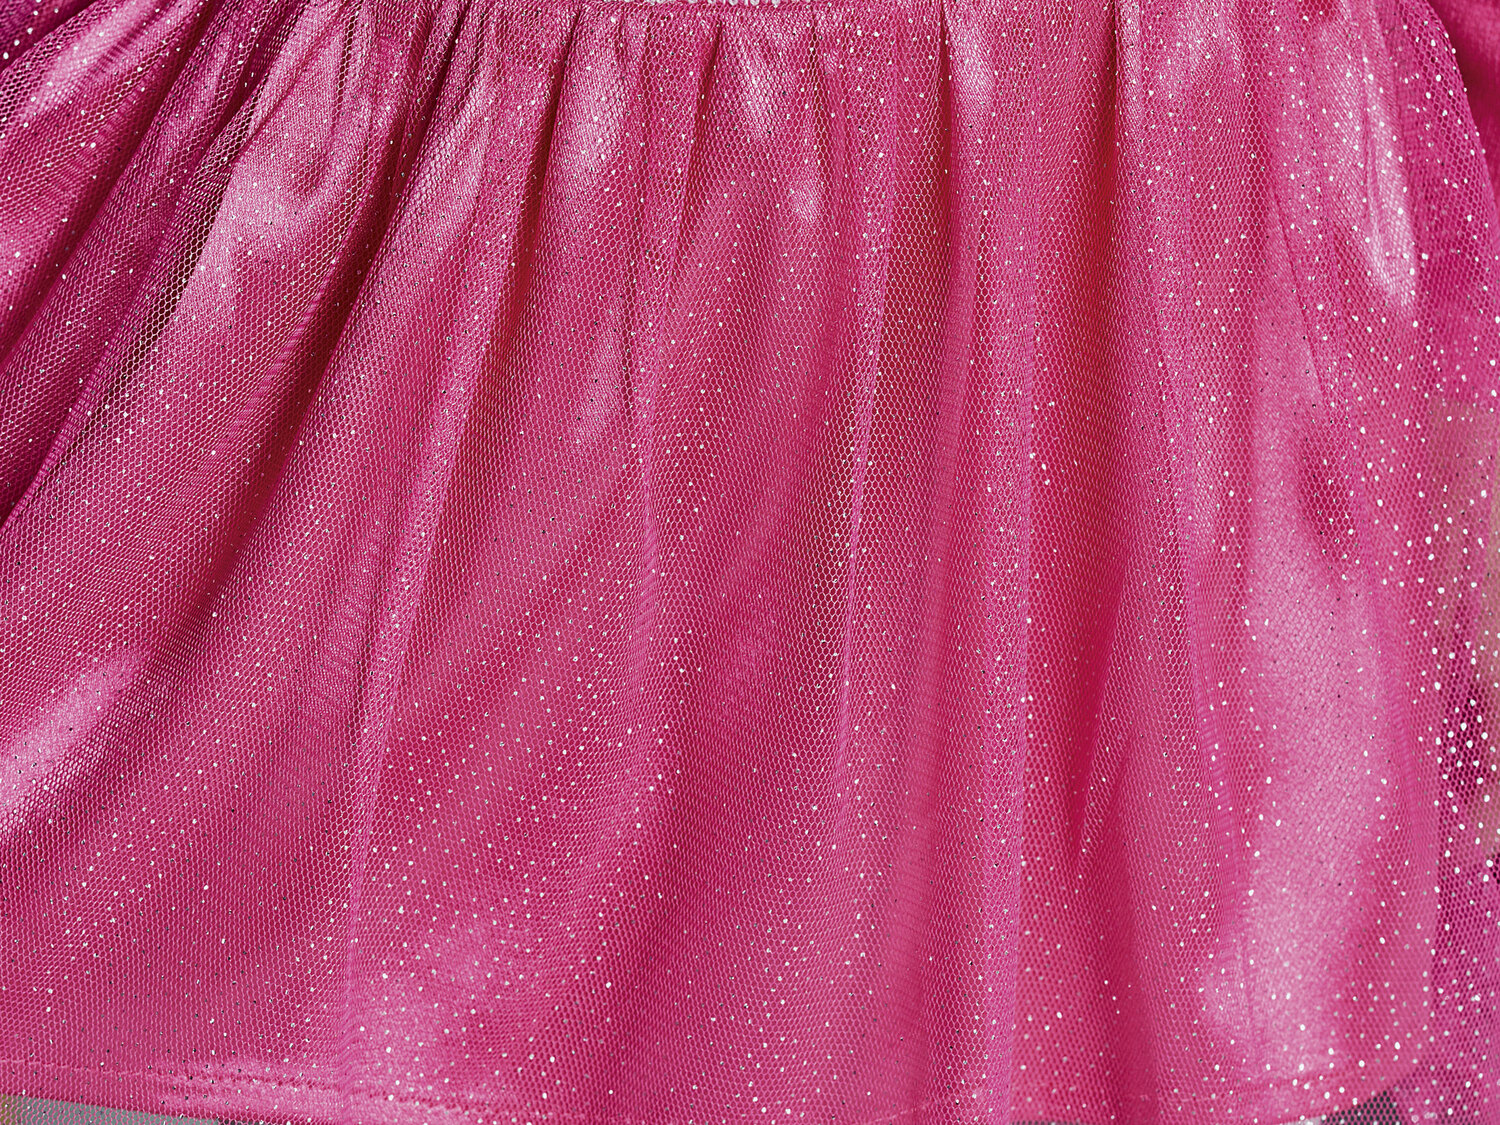 Sukienka Lupilu, cena 29,99 PLN 
- rozmiary: 86-116
- zapięcie na guziki na karku
- ...